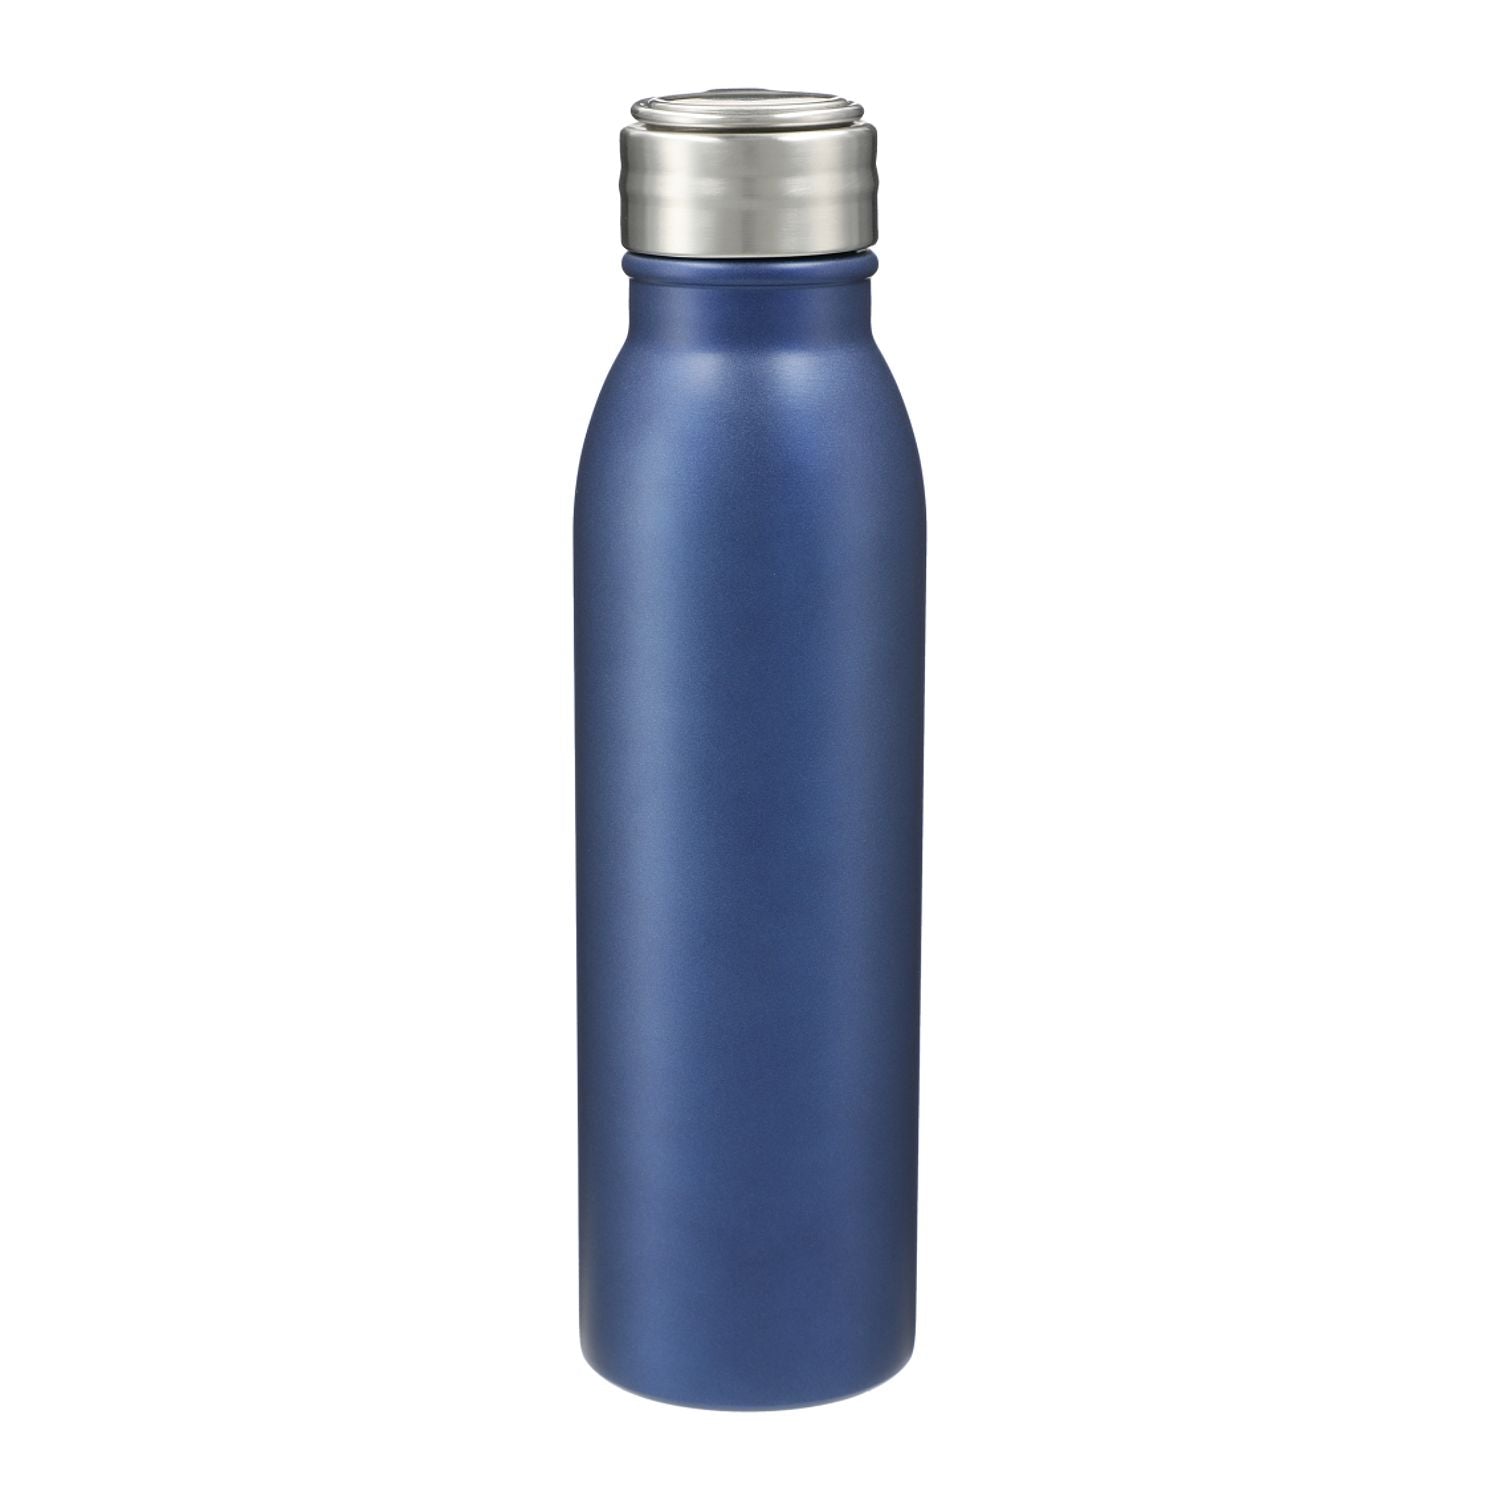 Vida 24oz Stainless Steel Single-Walled Bottle in blue